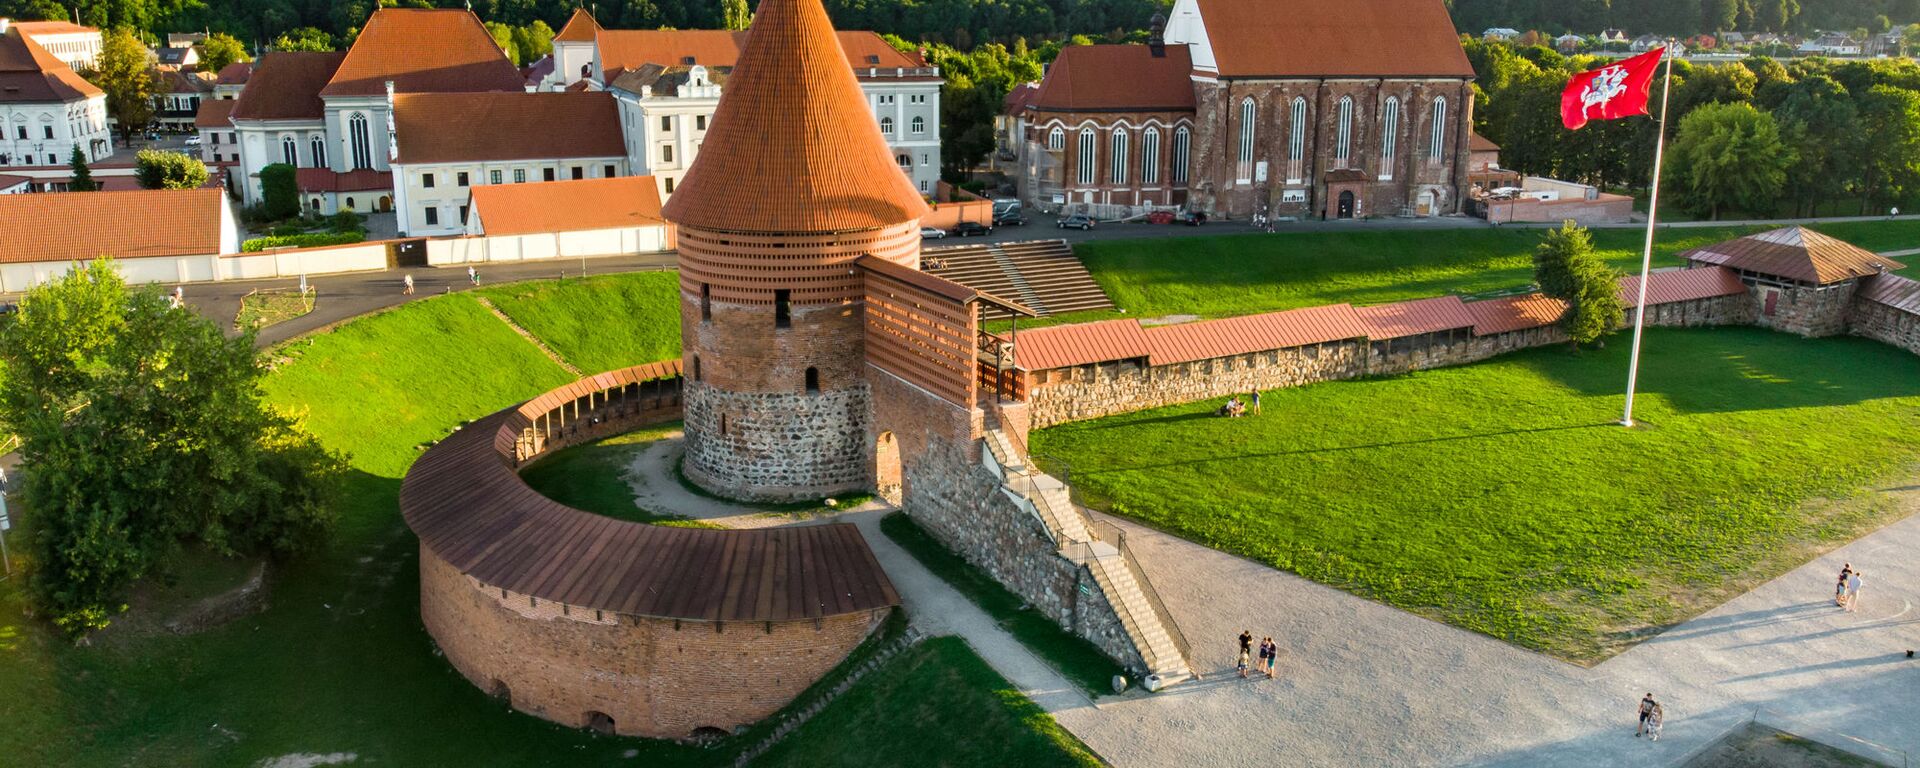 Каунасский замок, Каунас, Литва, архивное фото - Sputnik Lietuva, 1920, 18.05.2021